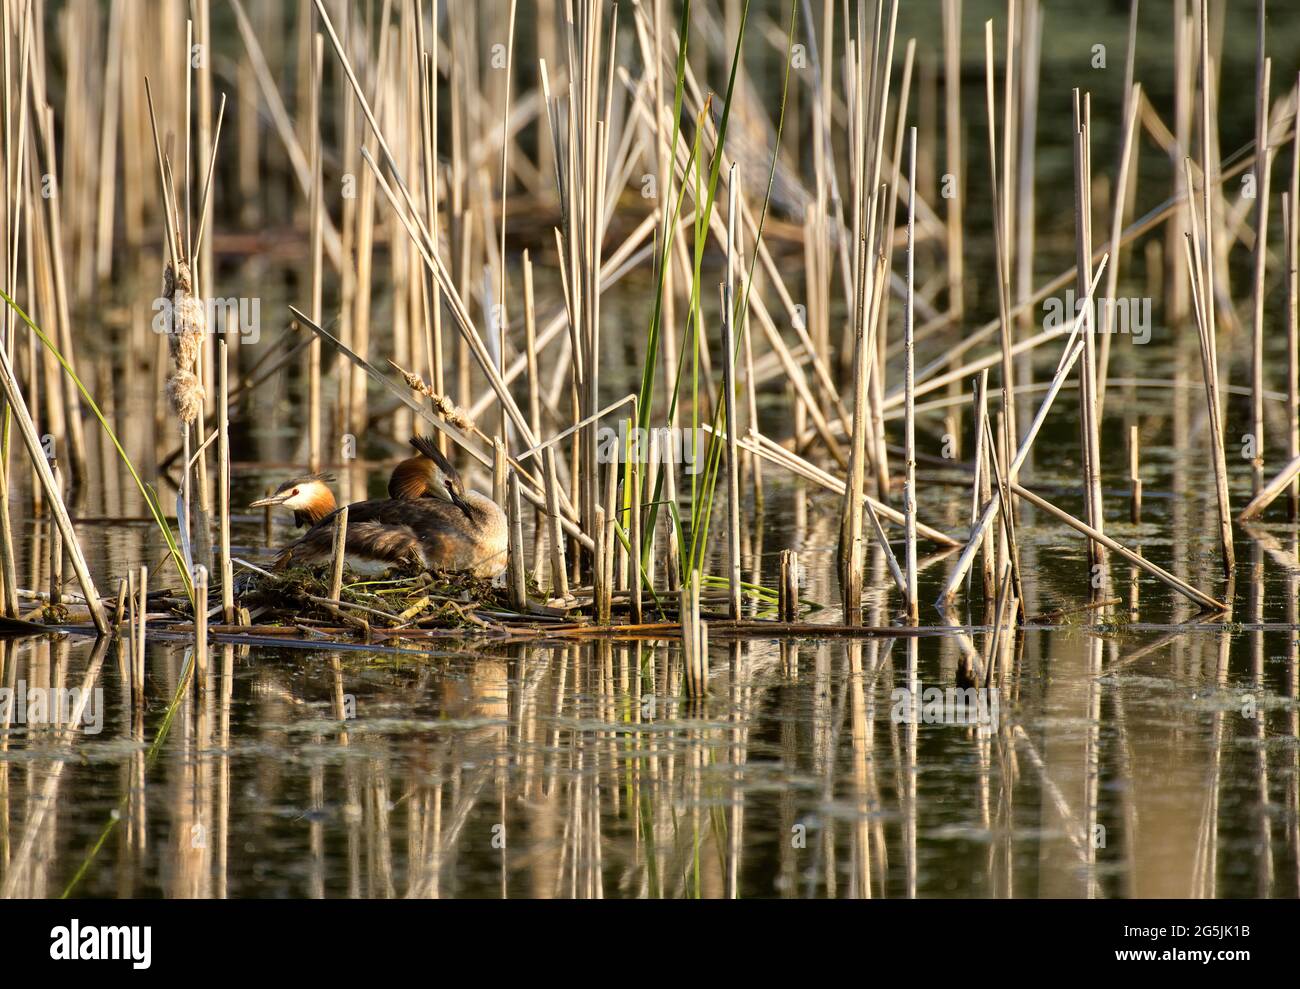 Zwei der Haubentaucher (Podiceps cristatus) auf ihrem Nest versteckt am Rand des Schilf.Frühling, Juni. Polen.Horizonta-Ansicht. Stockfoto